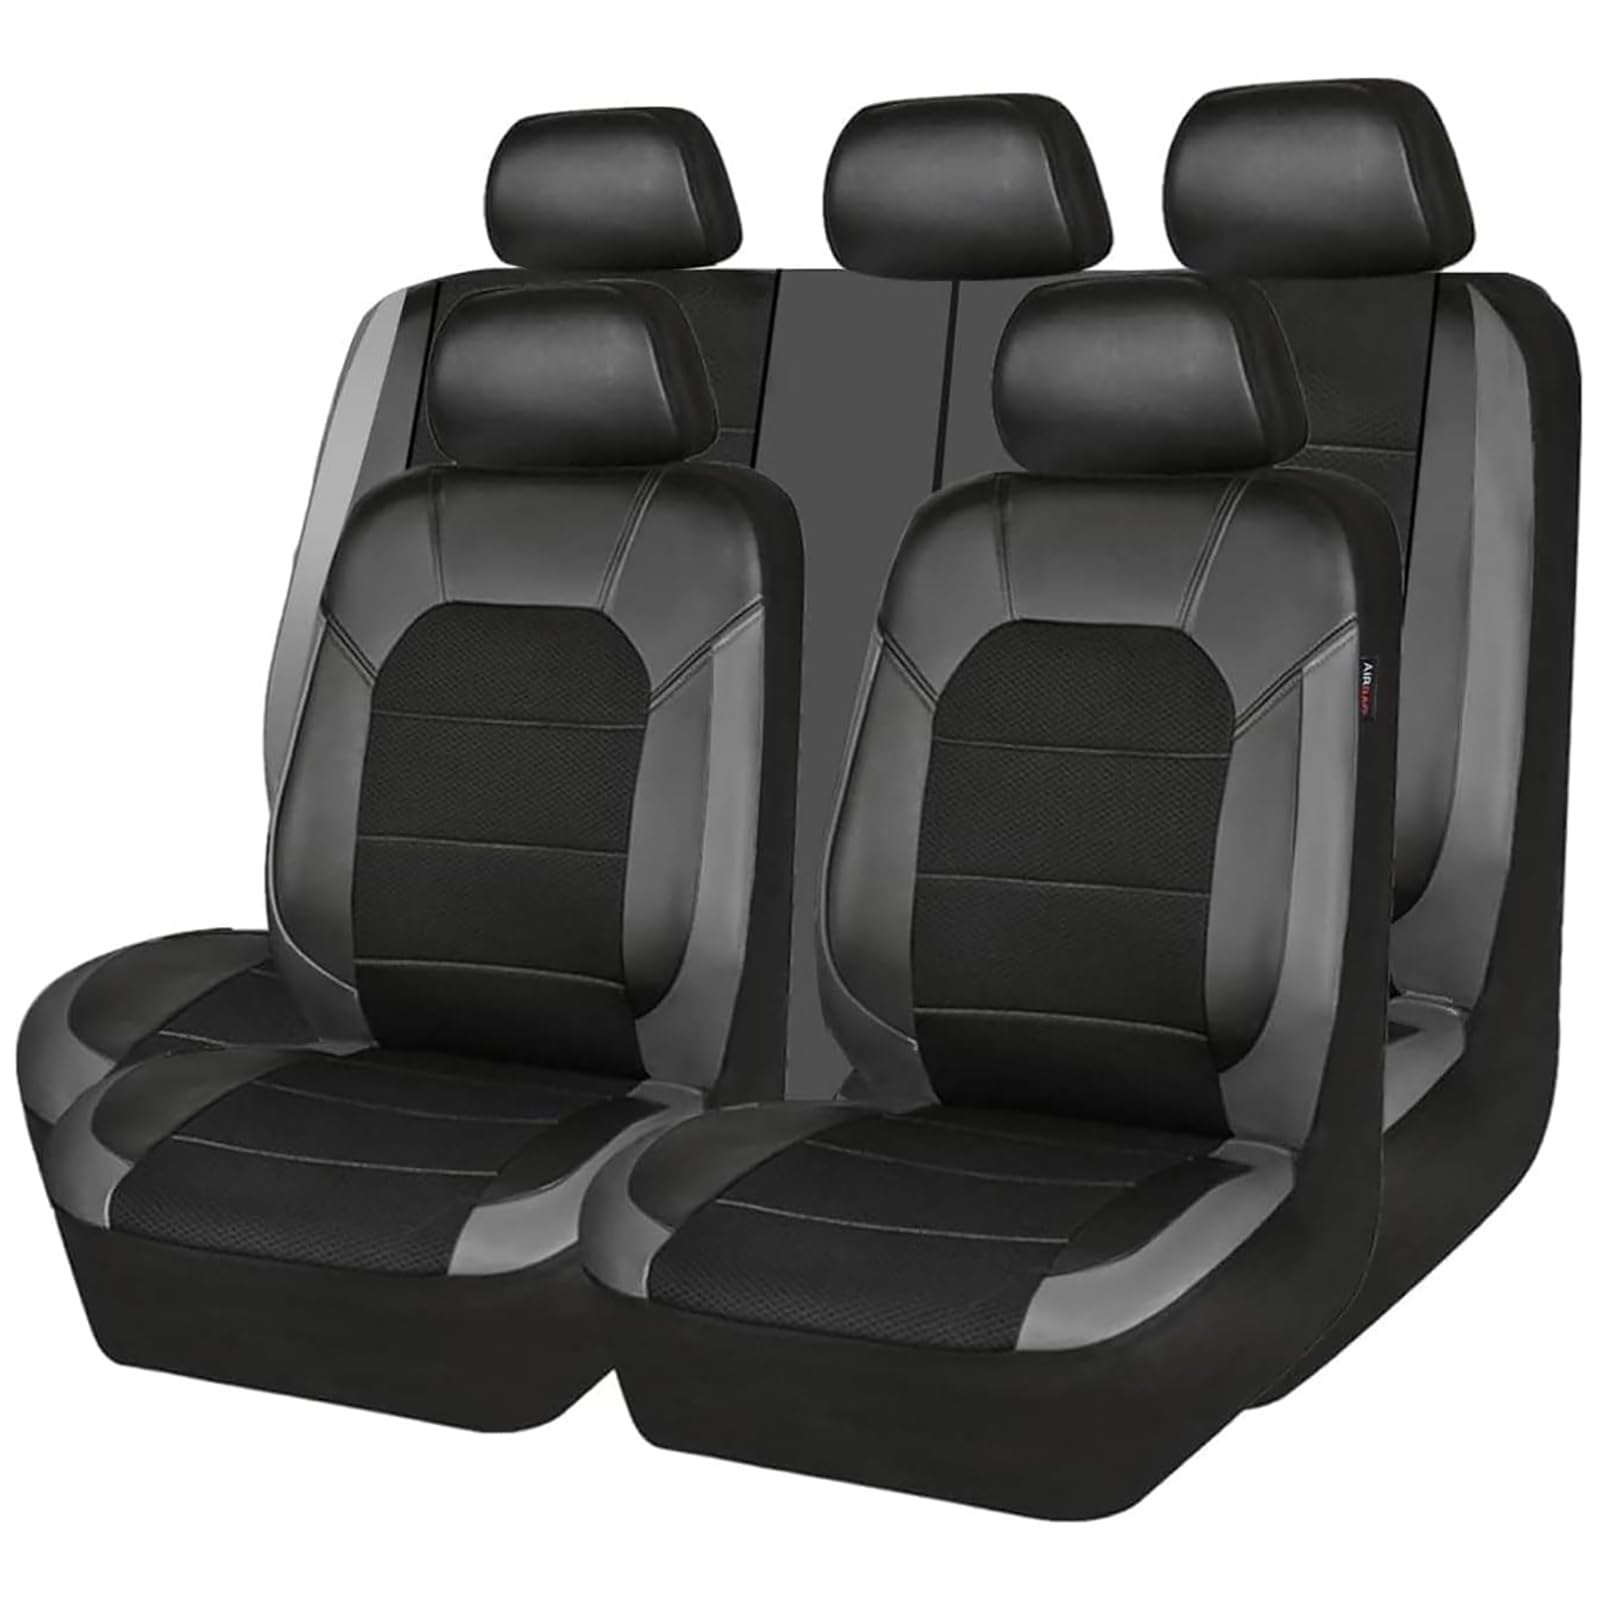 ZXAJDWNU Auto Leder Sitzbezüge Sets Für Hyundai Ioniq 5 2021 2022, 5 Sitze Allwetter Vorne Und Hinten Komfortabler Atmungsaktiv Sitzbezüge Sitzschoner Innenraum Zubehör,C/Gray von ZXAJDWNU